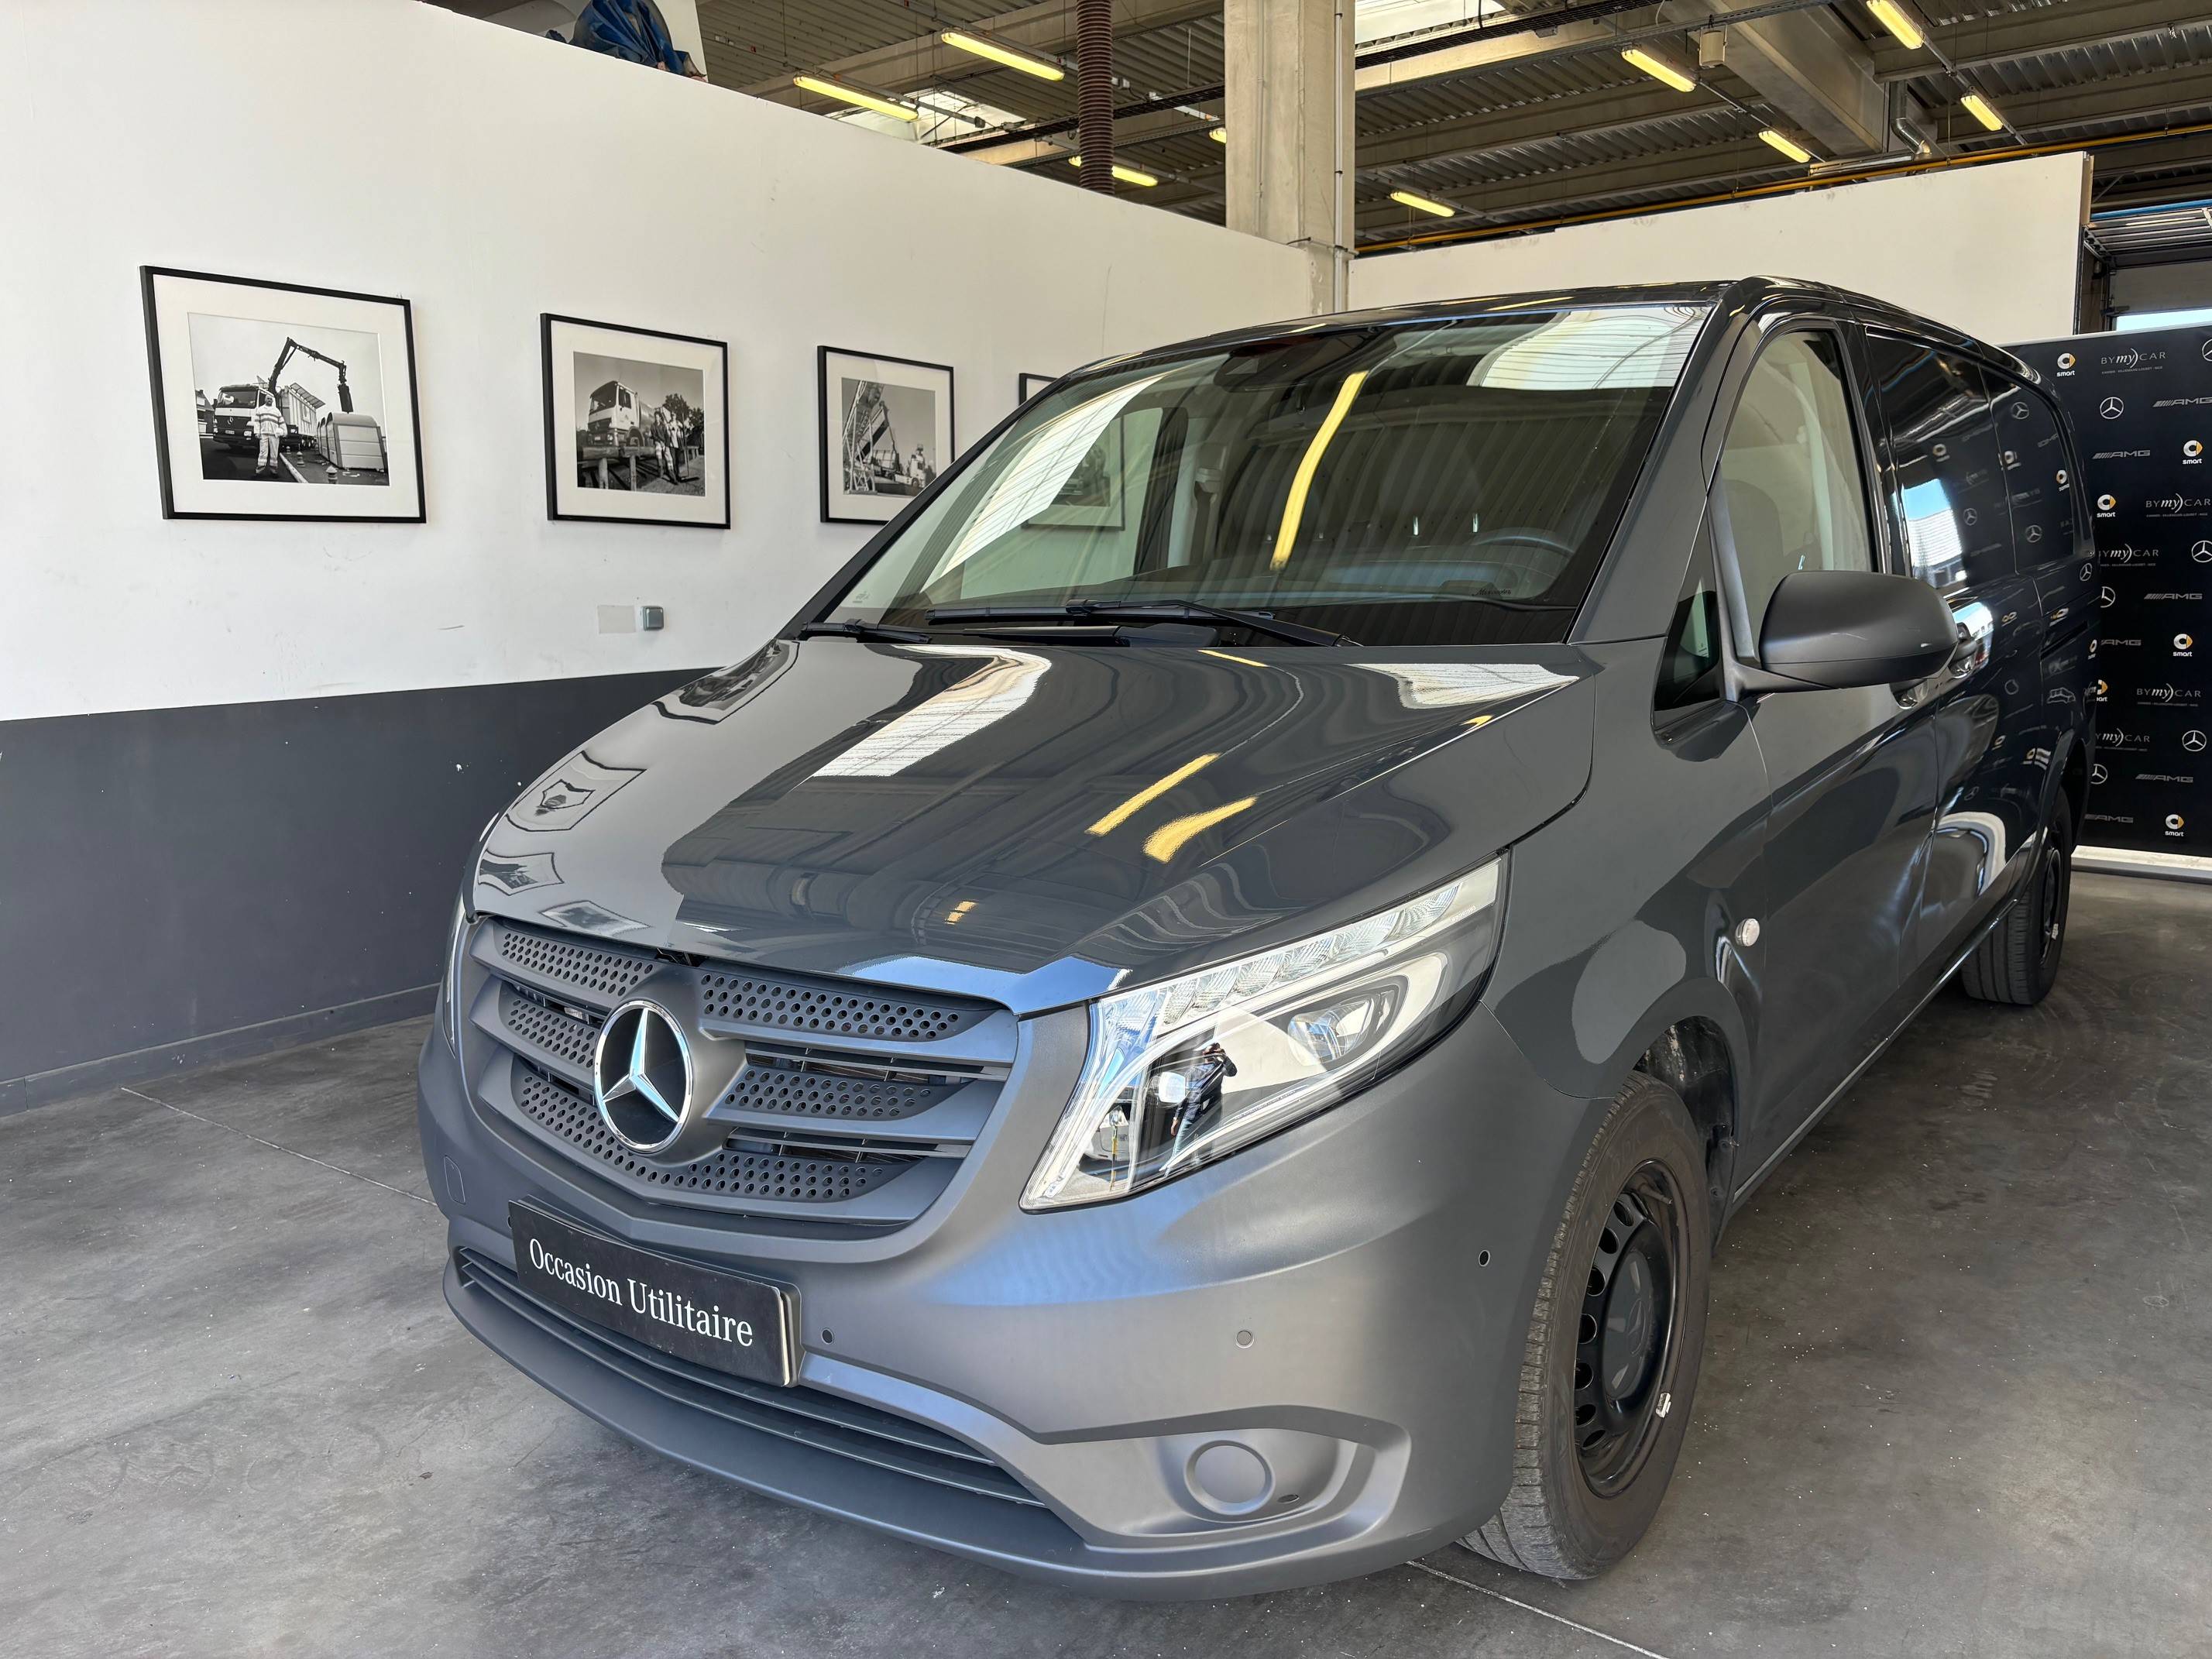 Mercedes-Benz Vito : les caractéristiques principales - Yatoocar